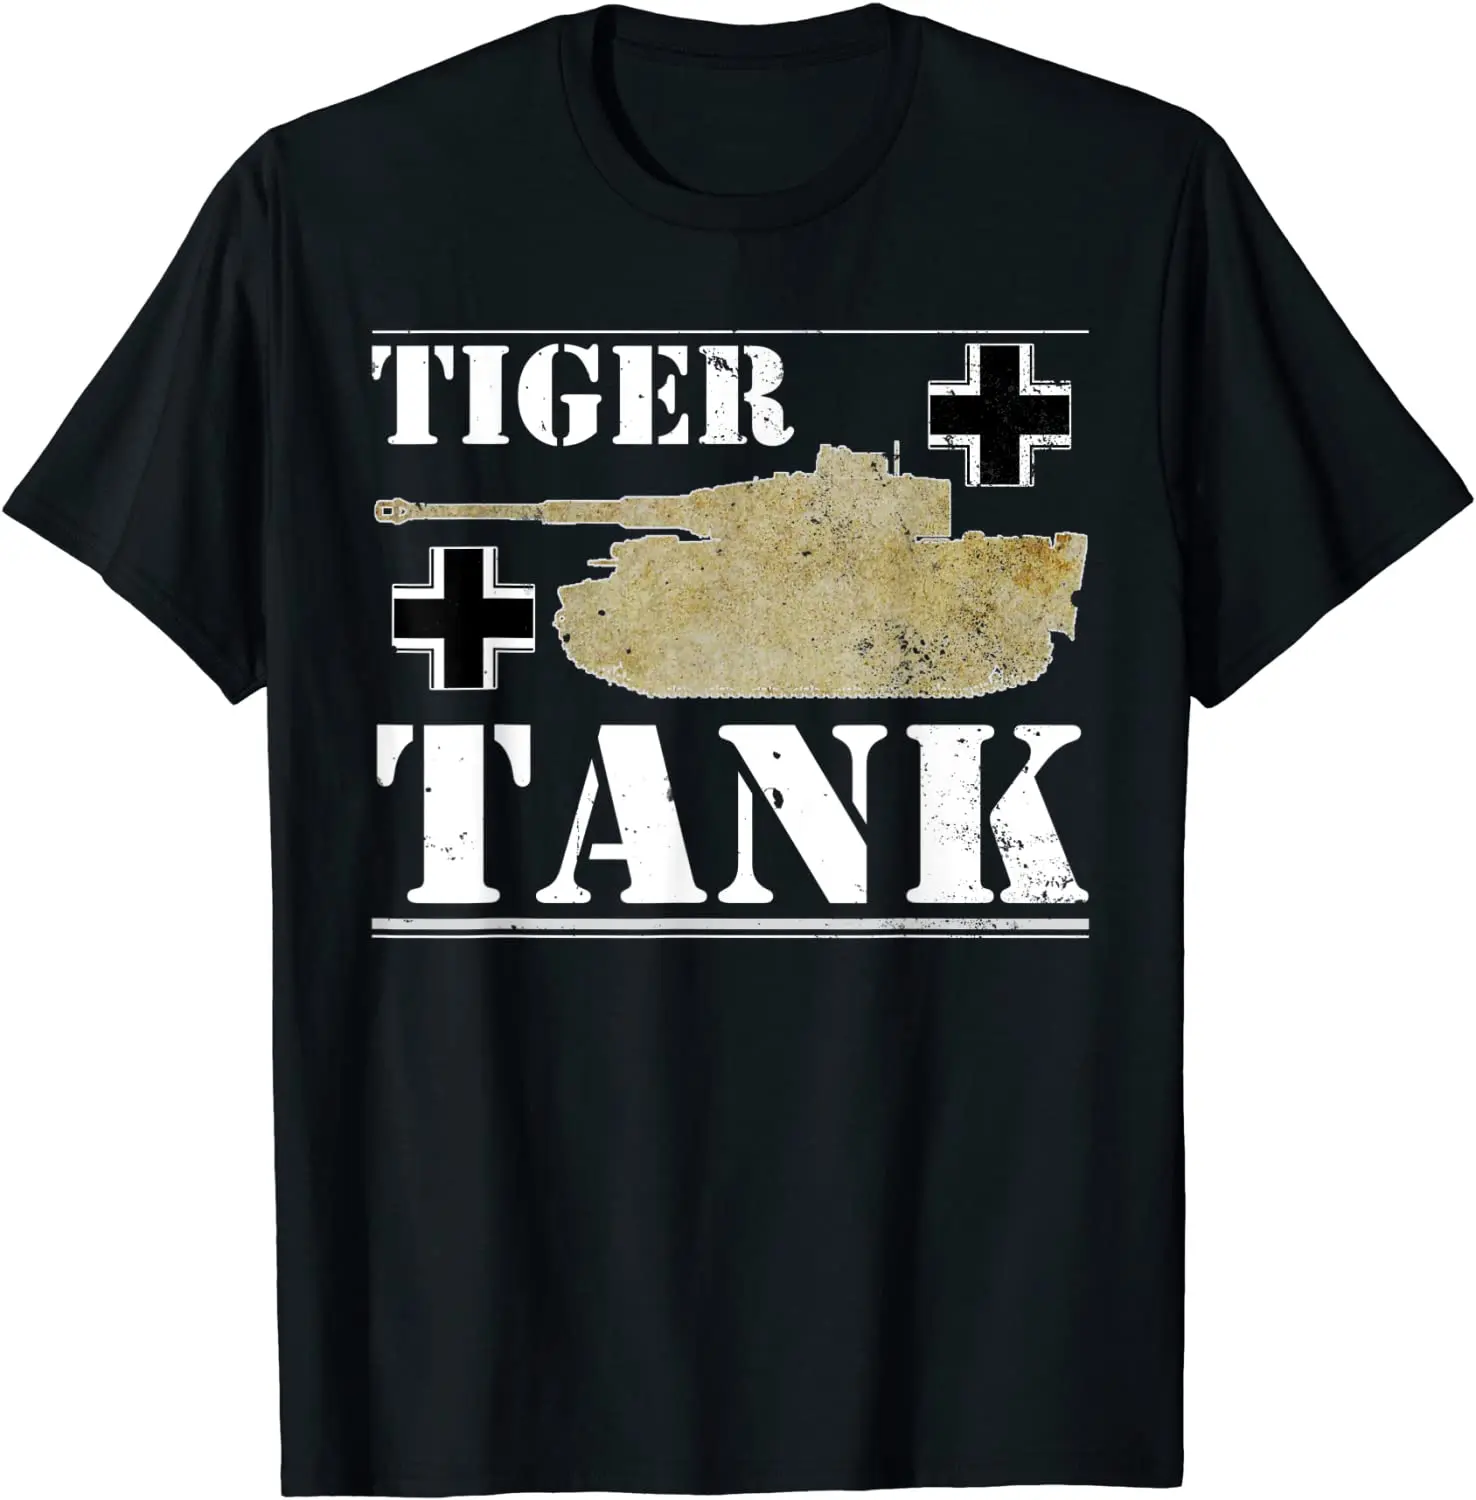 

Мужская футболка с принтом тигра танк-историческая Вторая мировая война (Вторая мировая война), немецкая футболка Panzer, Короткие повседневны...